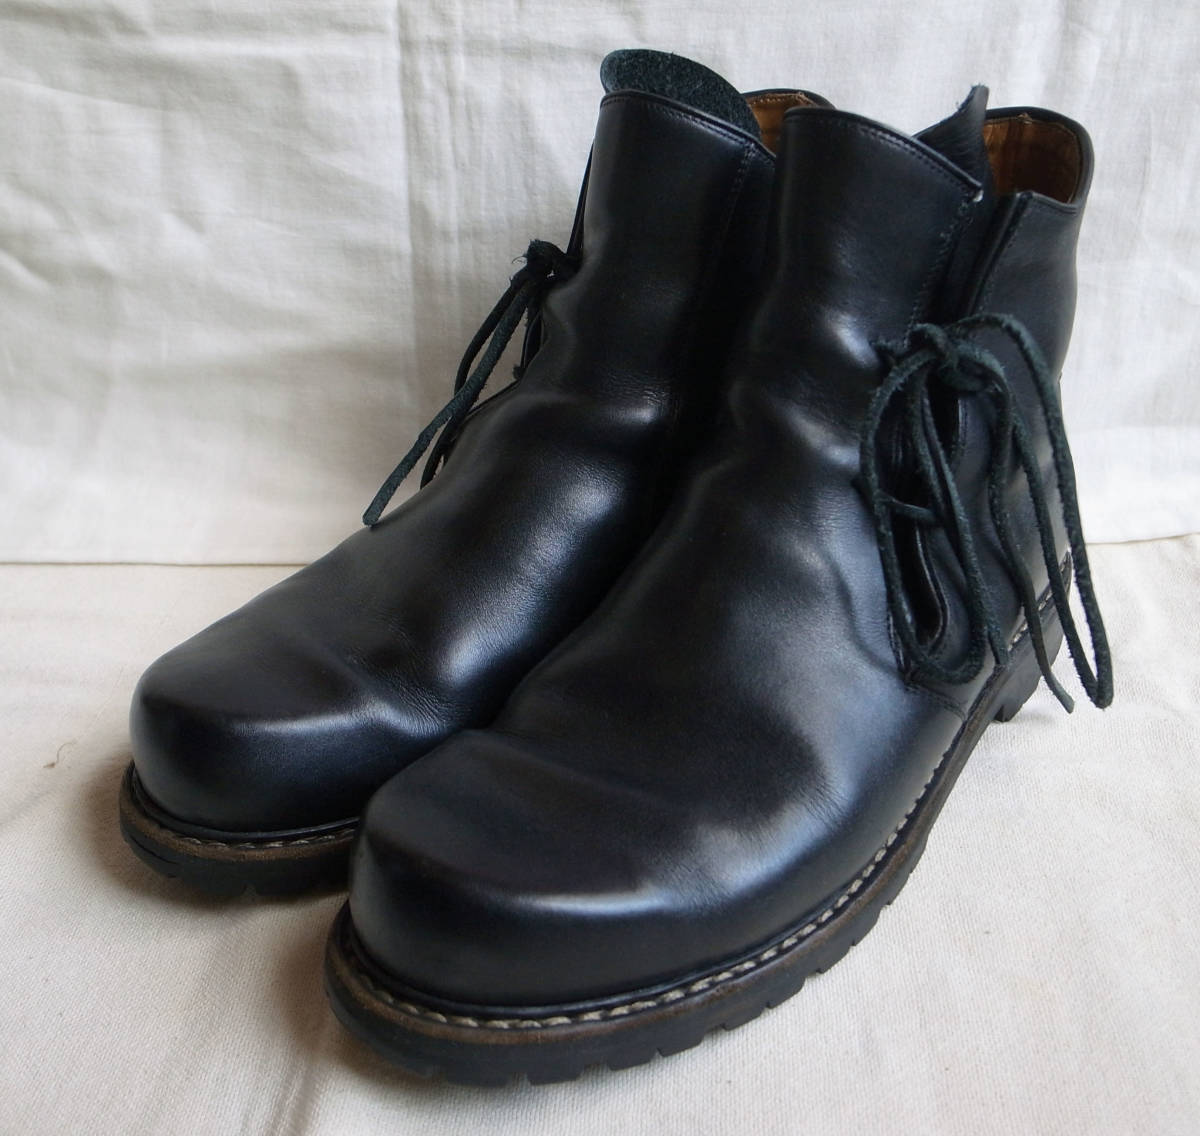 HAFERL ハーフェル サイドシューレース チロリアンブーツ/シューズ UK8/27~27.5㎝位 黒 ドイツ製 ノルウェージャン製法 革靴